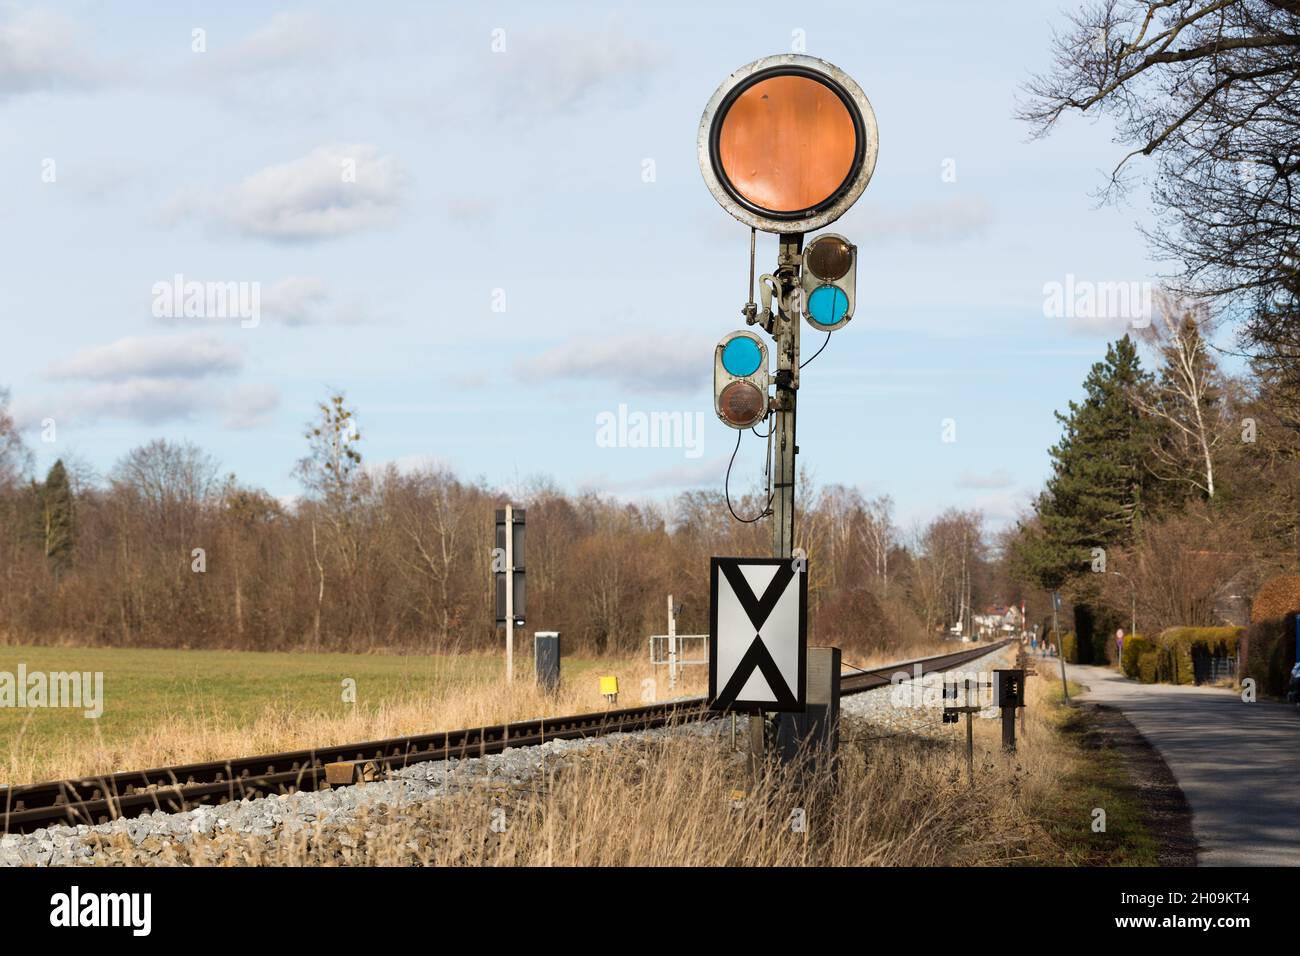 St. Alban, Deutschland - 2. Feb 2021: Rundes, orangefarbenes Bahnsignal. Direkt neben der Eisenbahnstrecke. Stockfoto